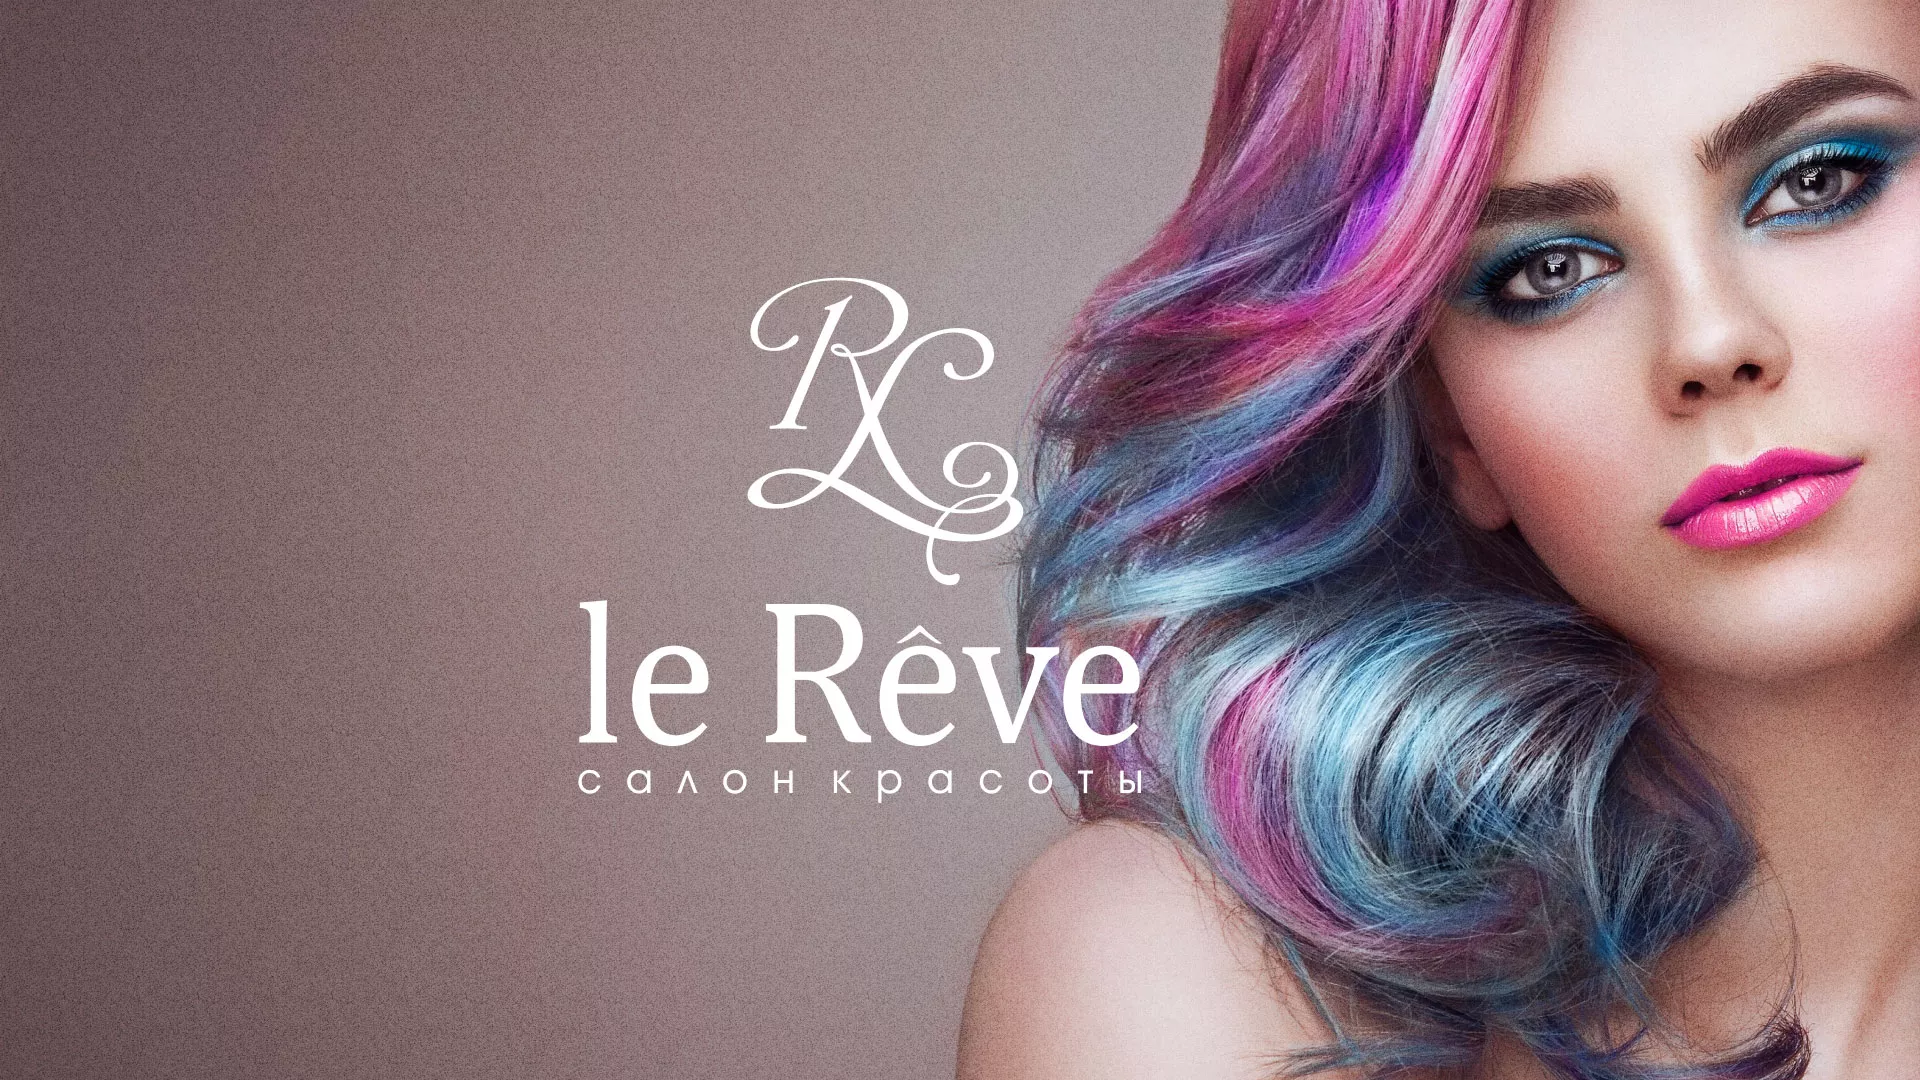 Создание сайта для салона красоты «Le Reve» в Жердевке